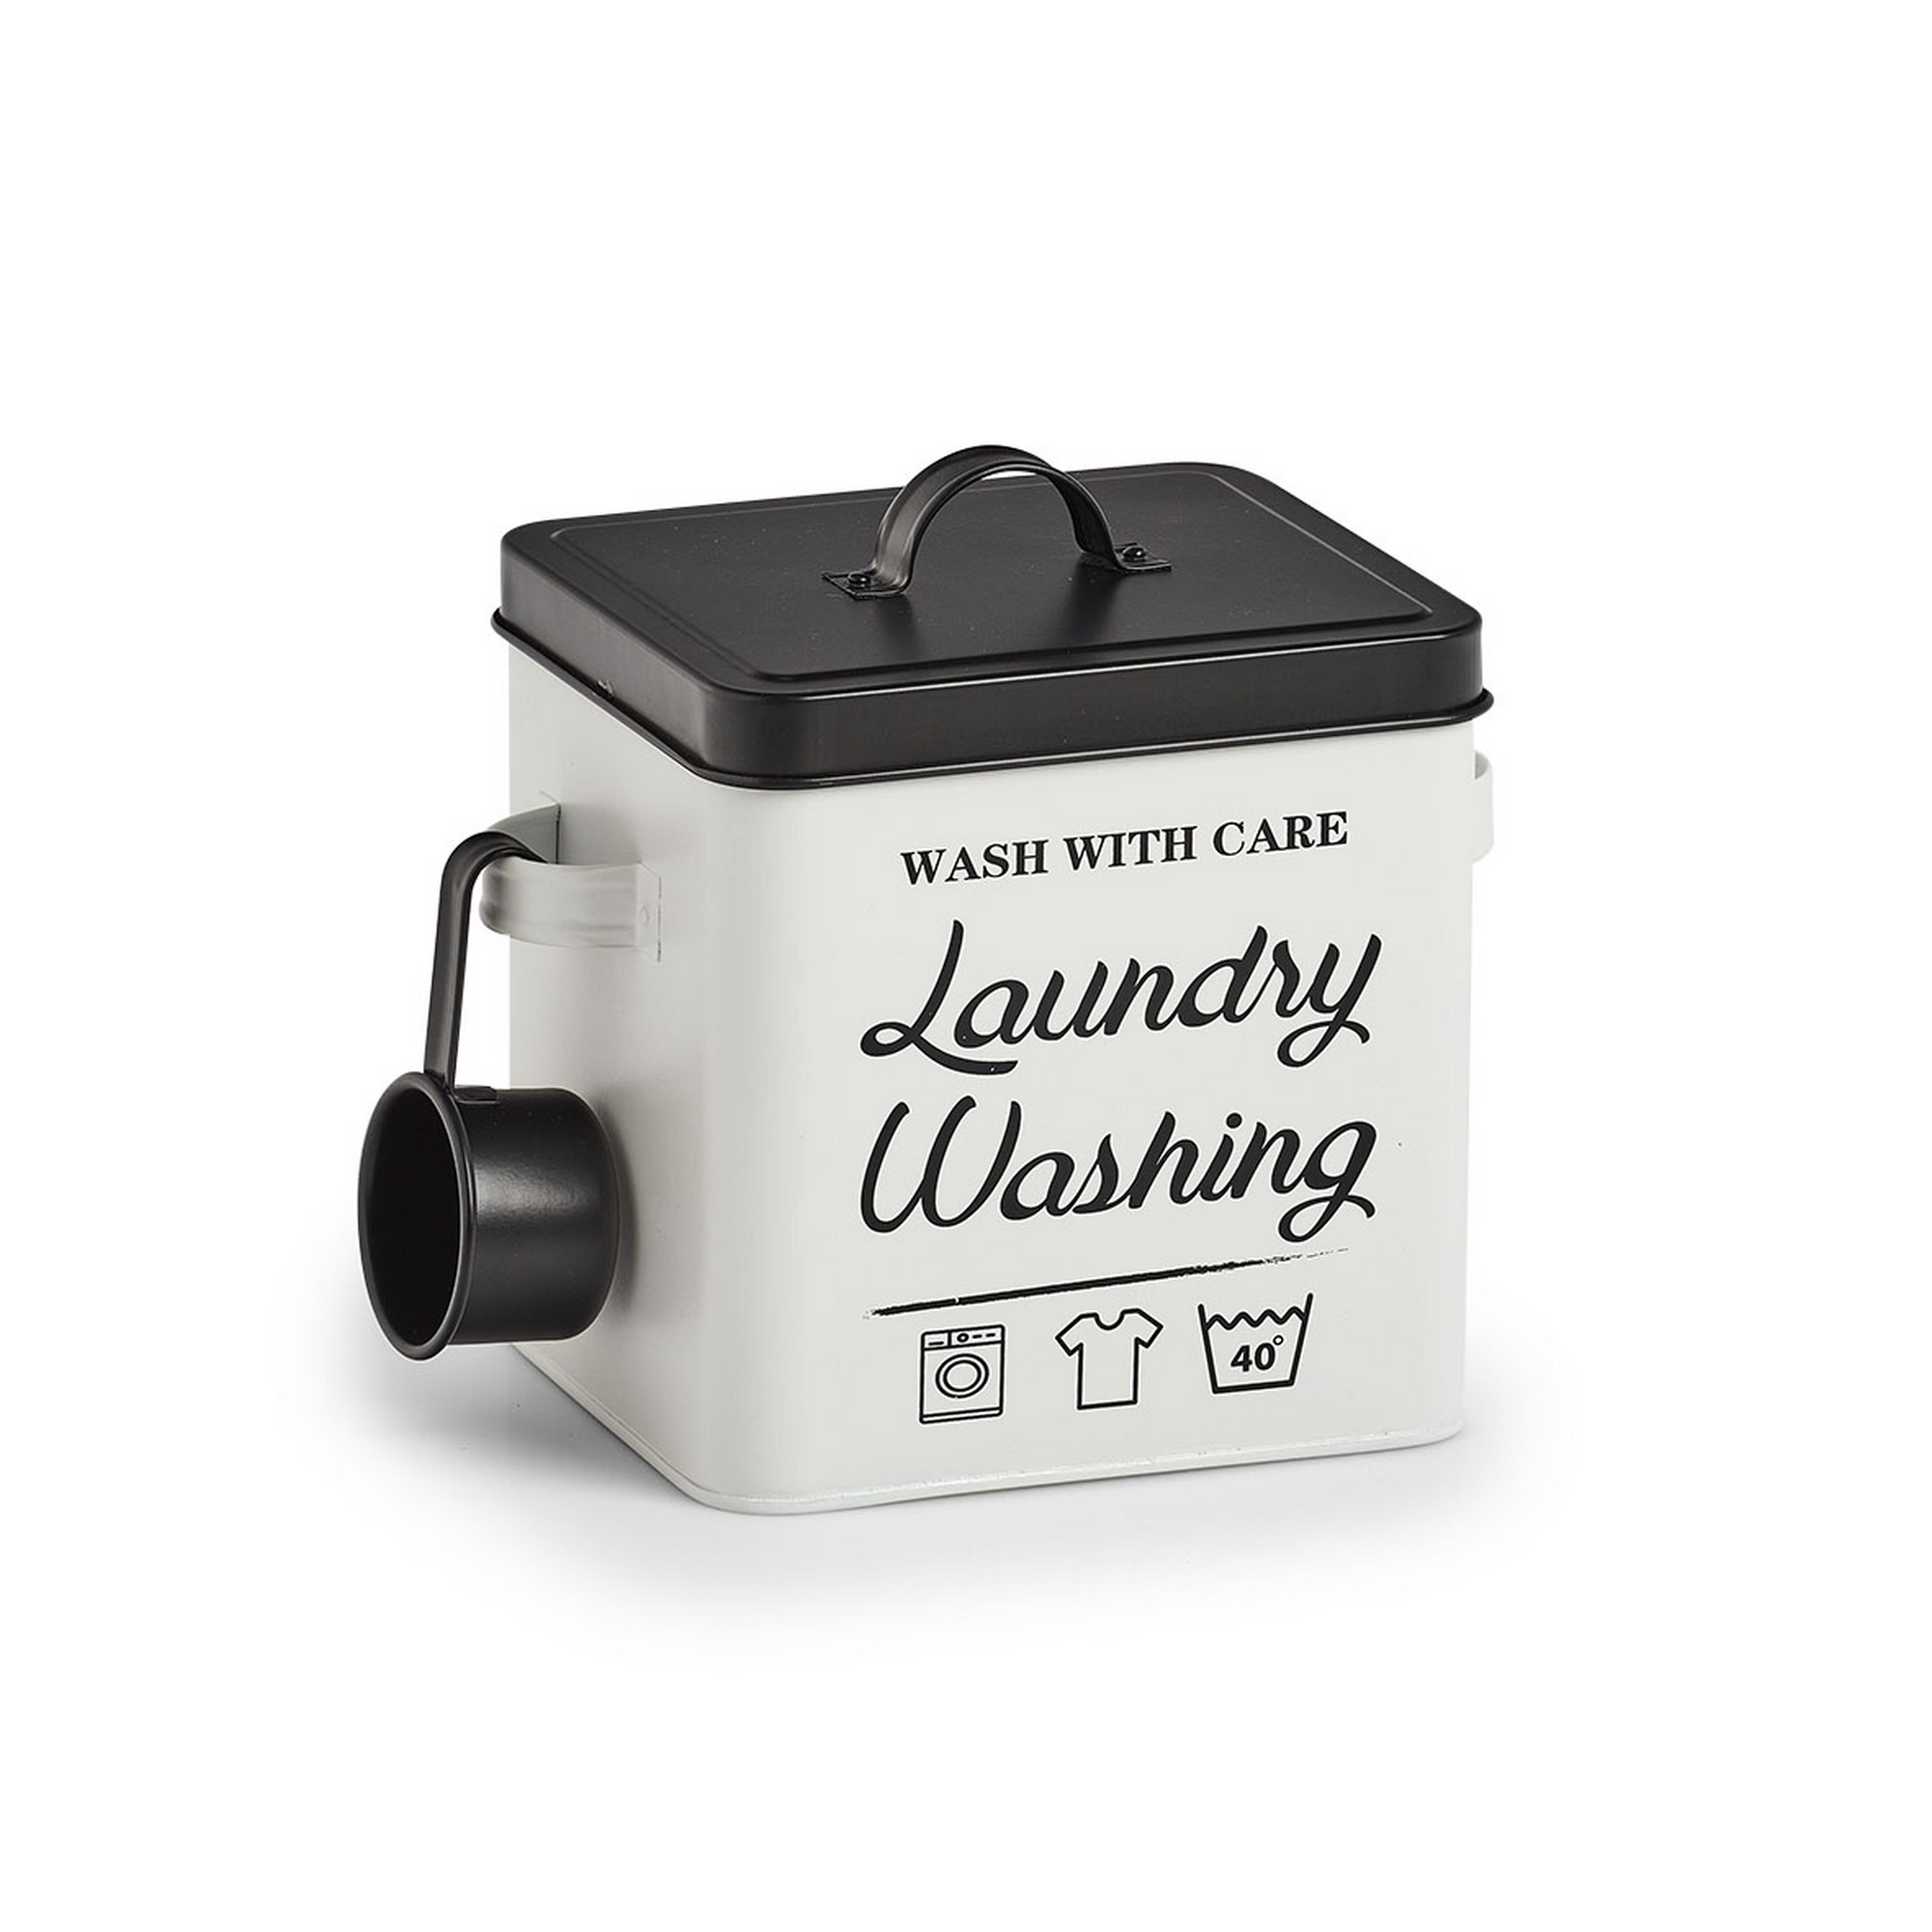 Waschpulver-Box 'Laundry' weiß/schwarz 25 x 18,1 x 15,5 cm + product picture